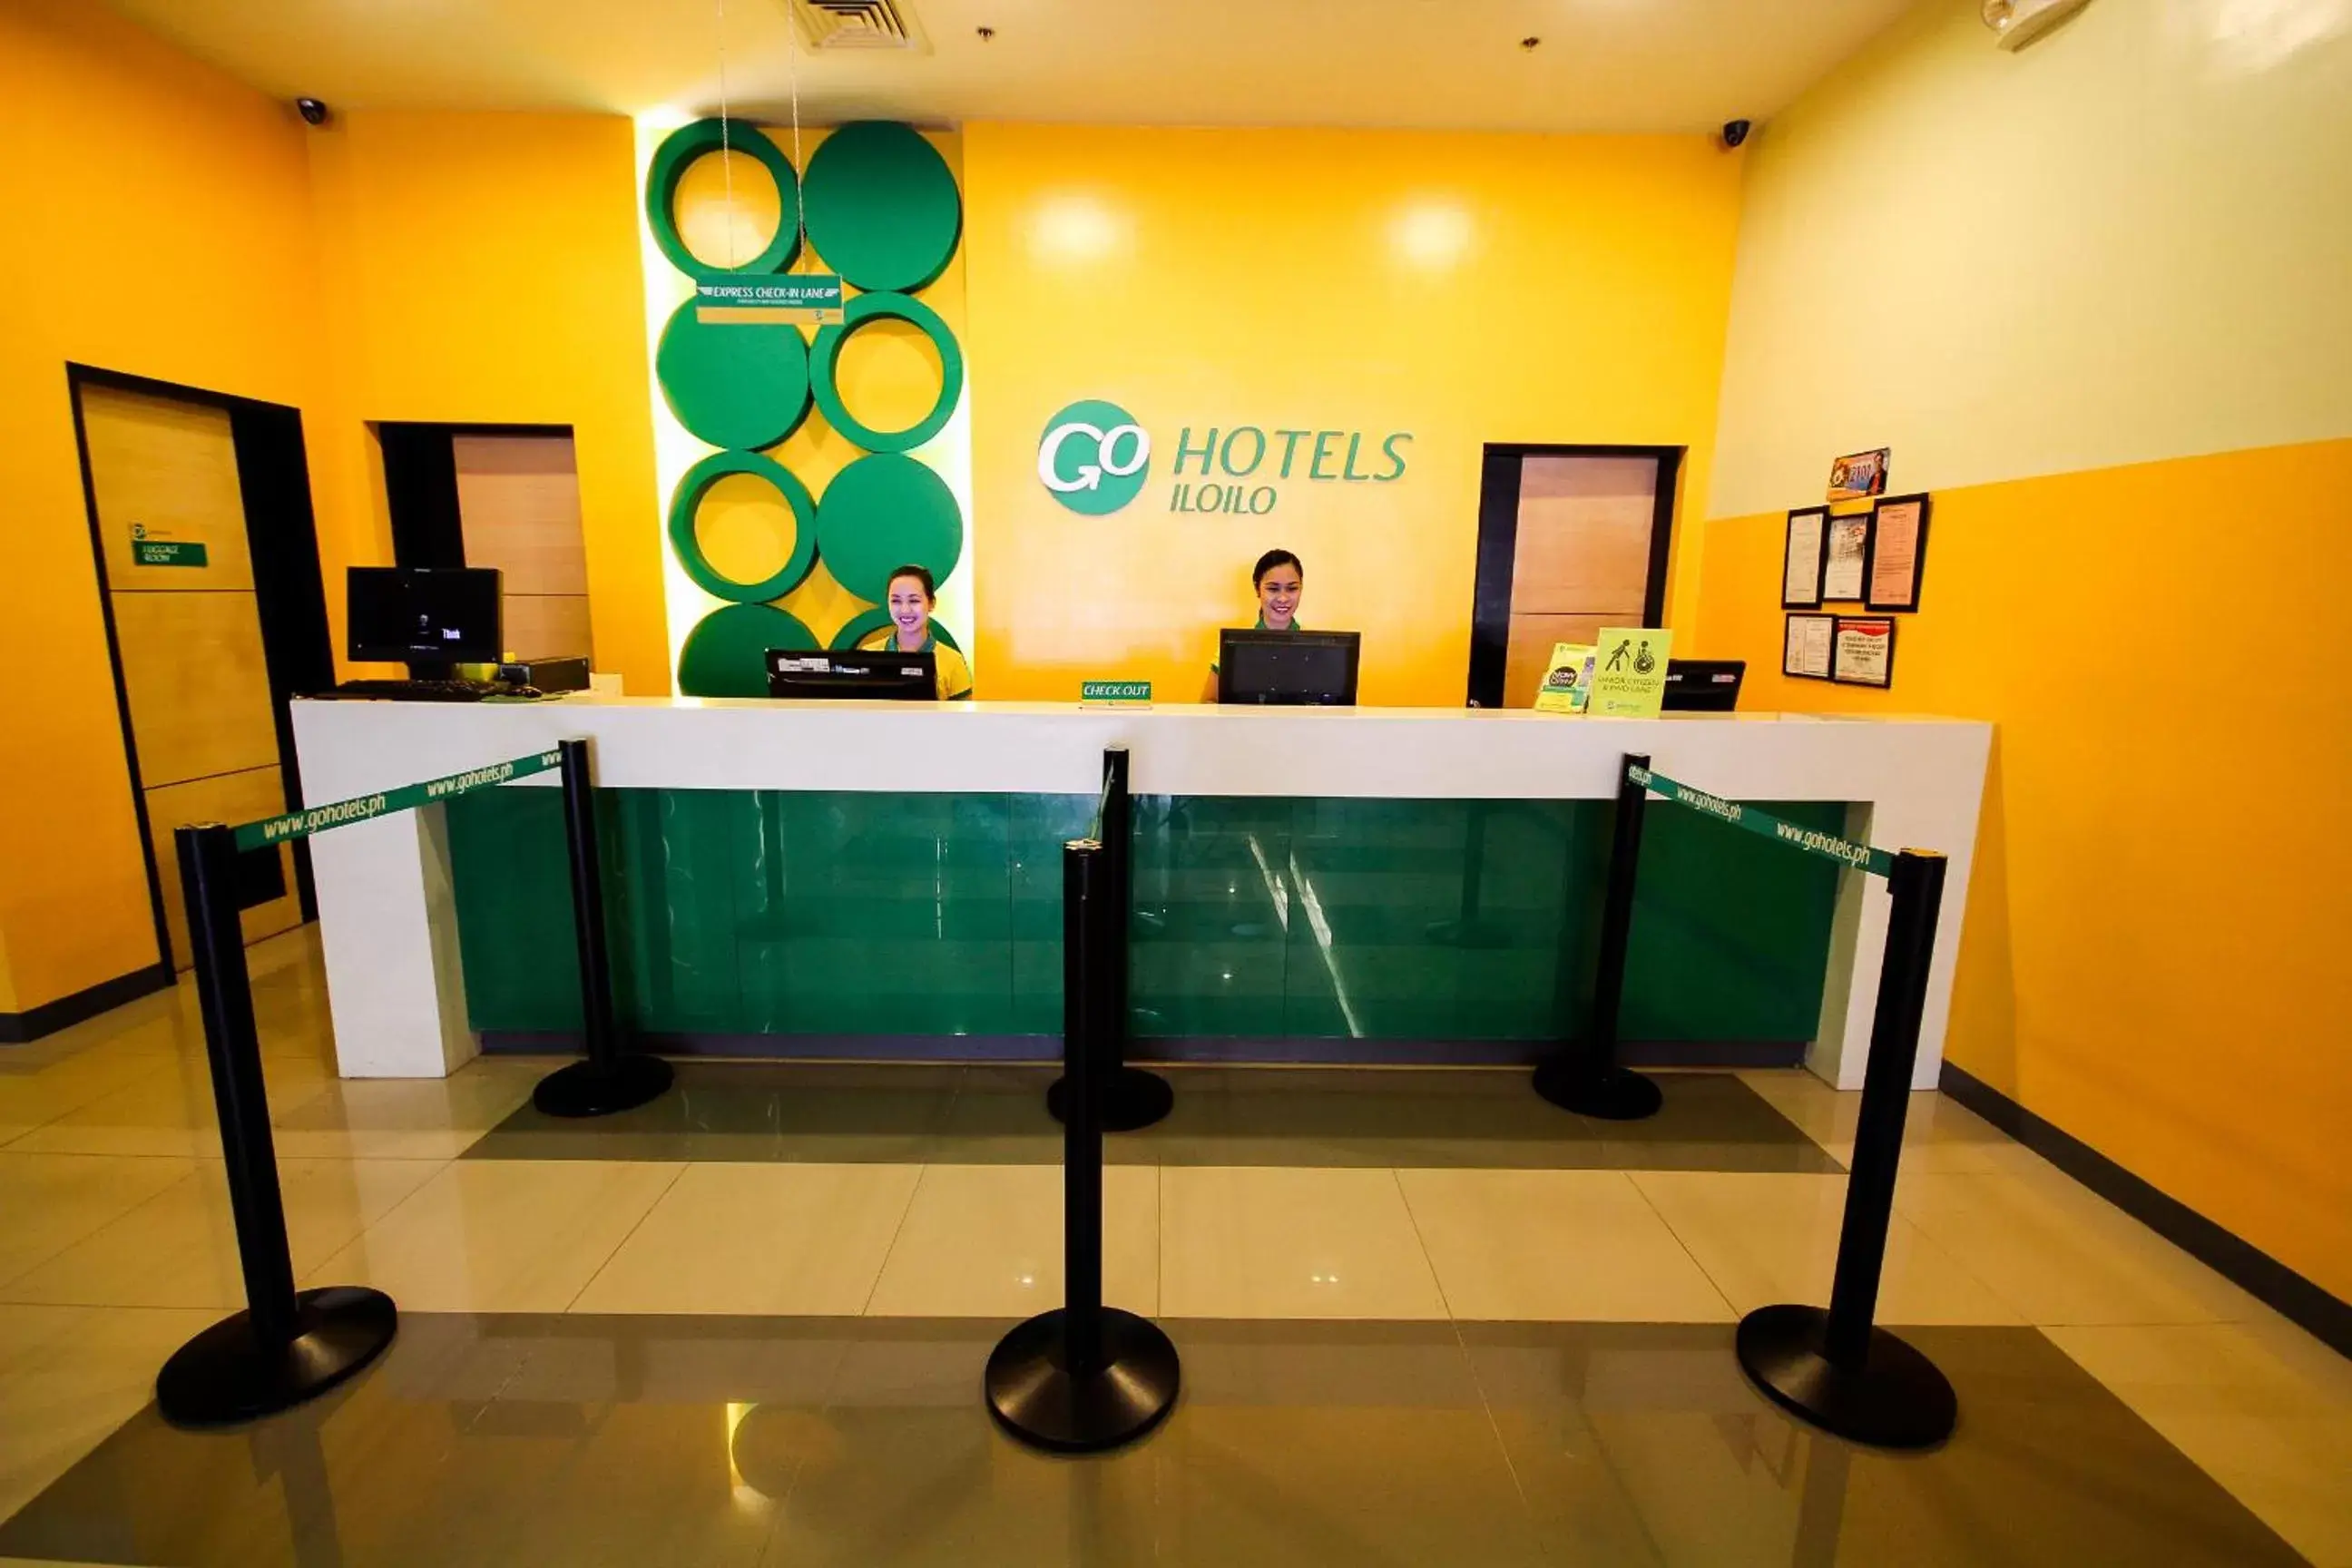 Staff, Lobby/Reception in Go Hotels Iloilo